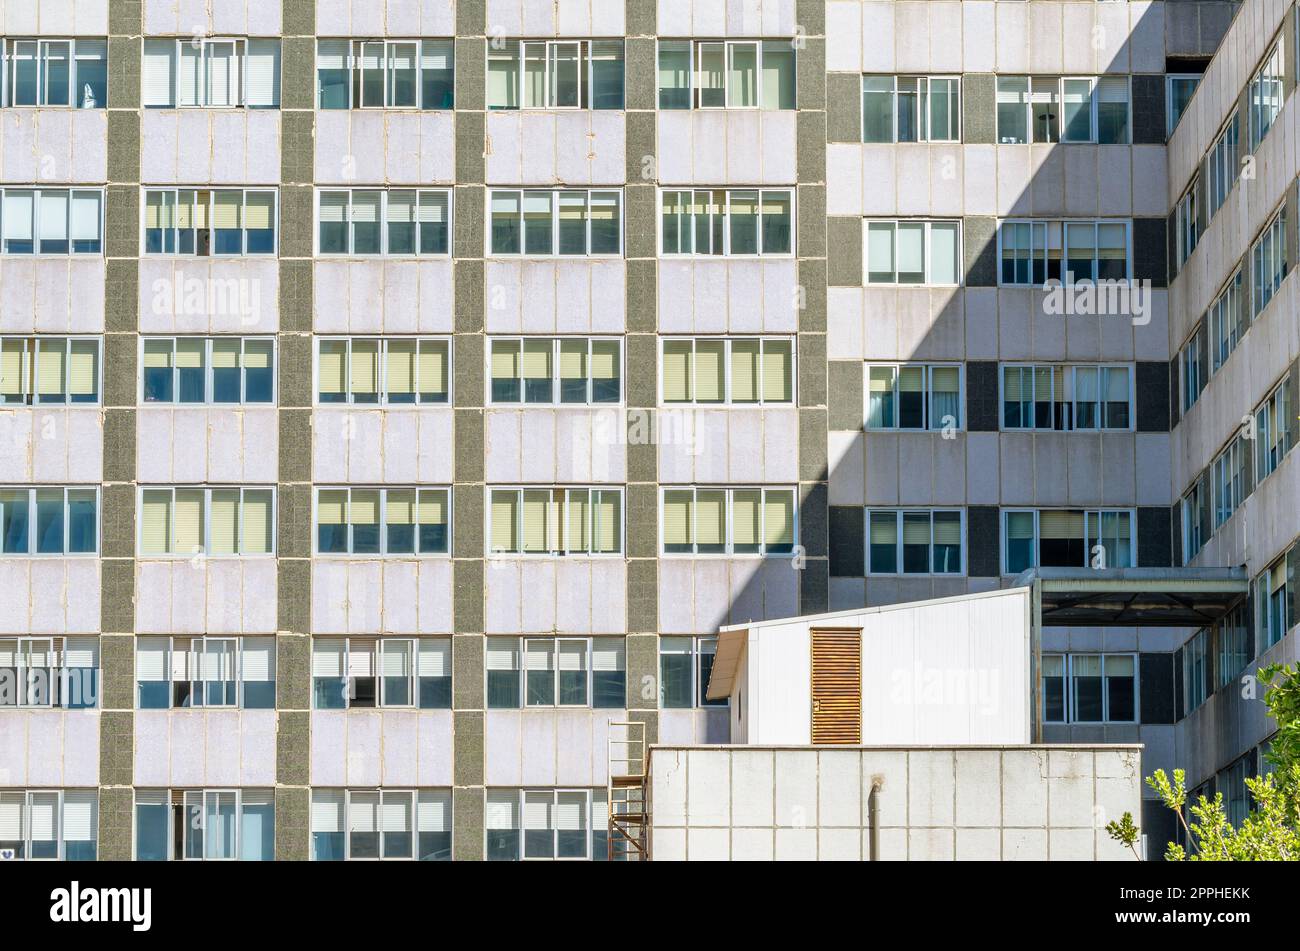 MADRID, SPANIEN - 6. OKTOBER 2021: Fassadendetails des Universitätsklinikums La Paz in Madrid, eines der größten Krankenhäuser und am besten geschätzten öffentlichen Krankenhäuser in Spanien Stockfoto